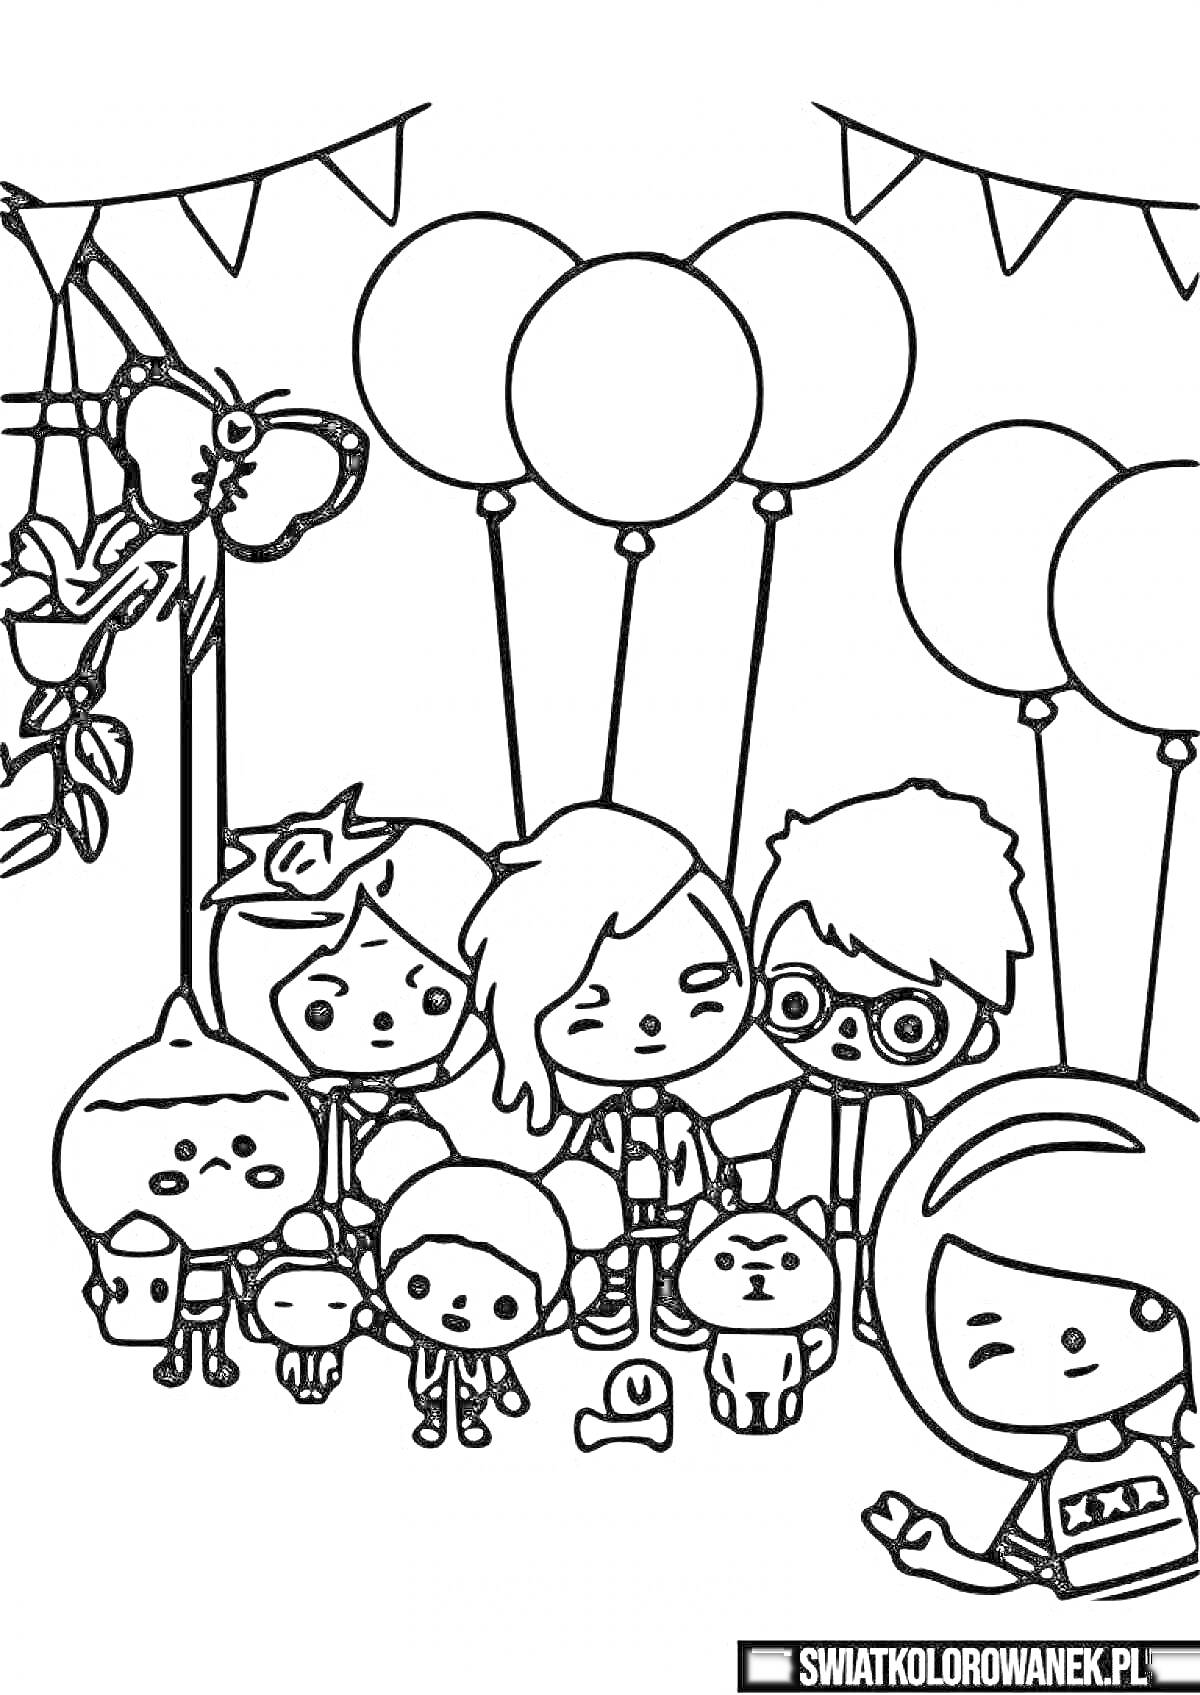 Раскраска группа персонажей под гирляндой с шарами